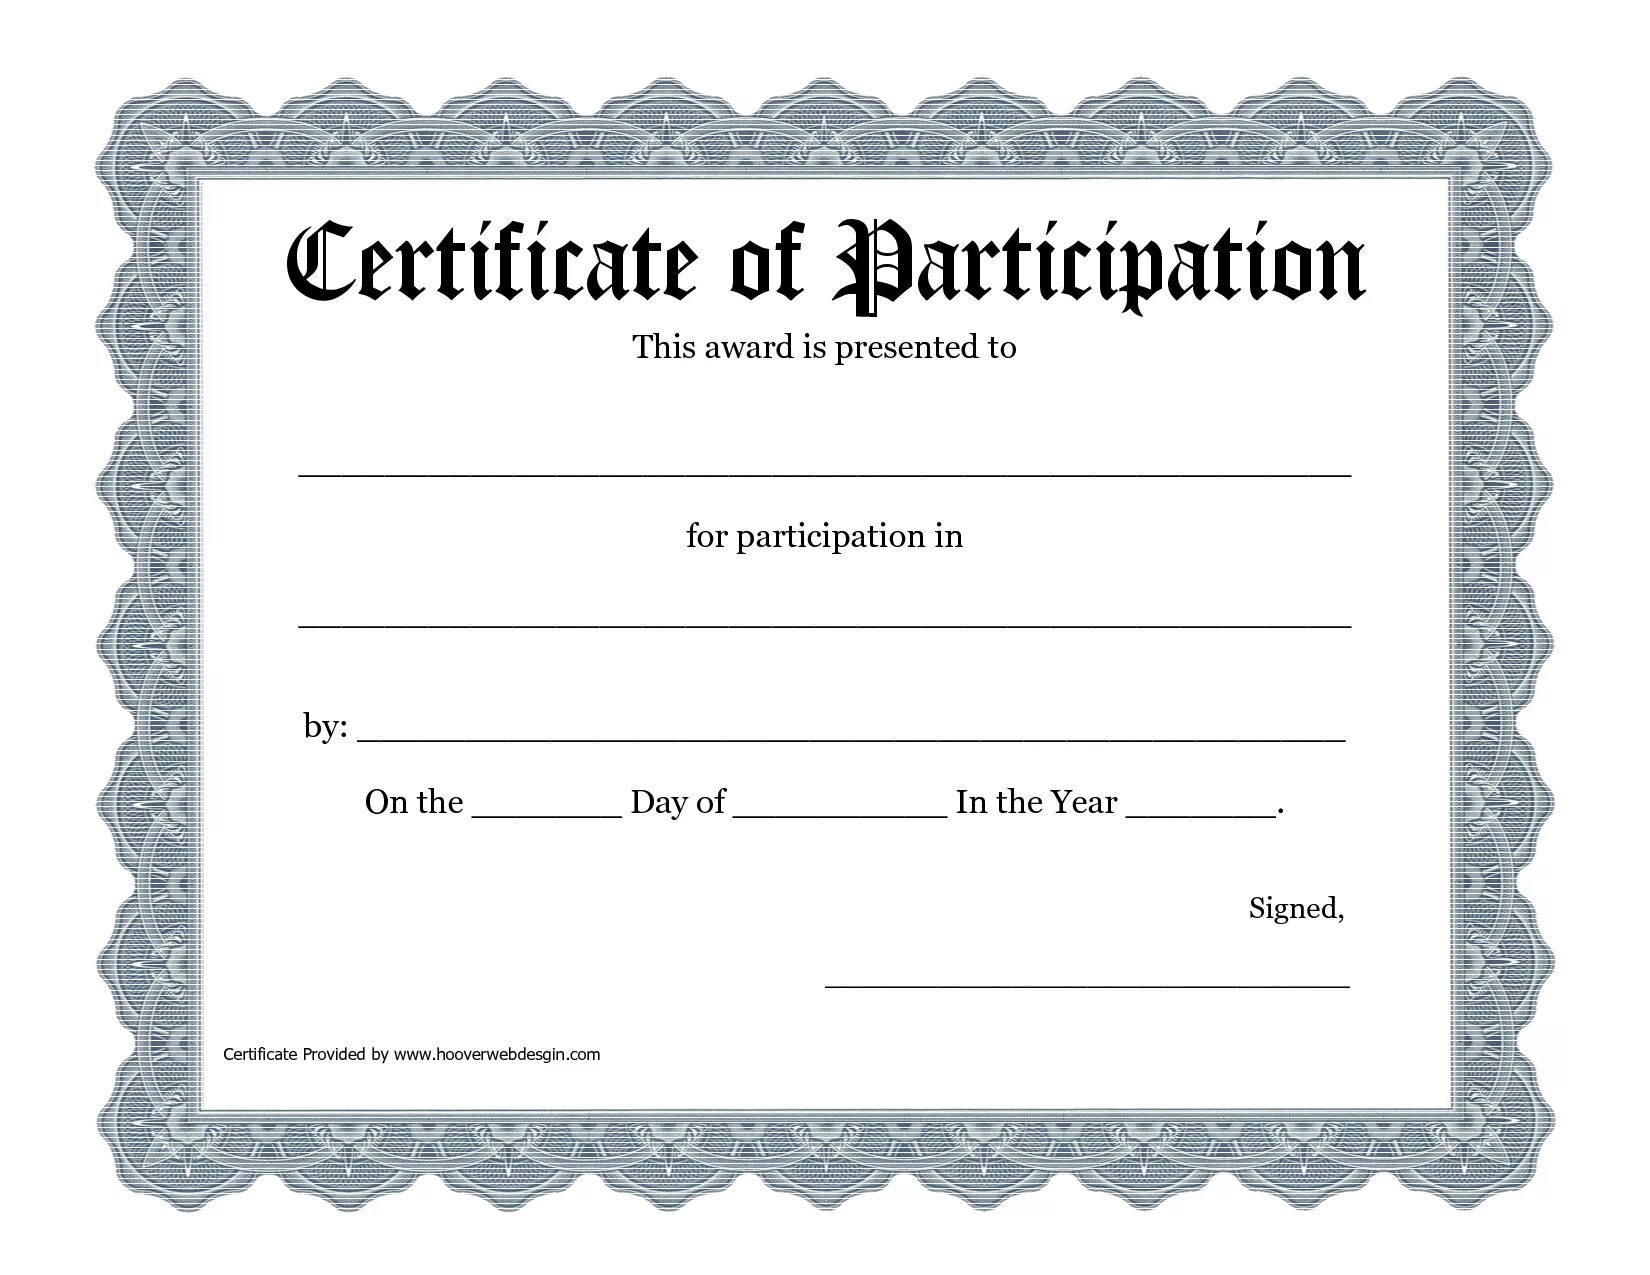 Url certificate. Certificate of Appreciation. Сертификат шаблон. Сертификат макет. Certificate of participation.